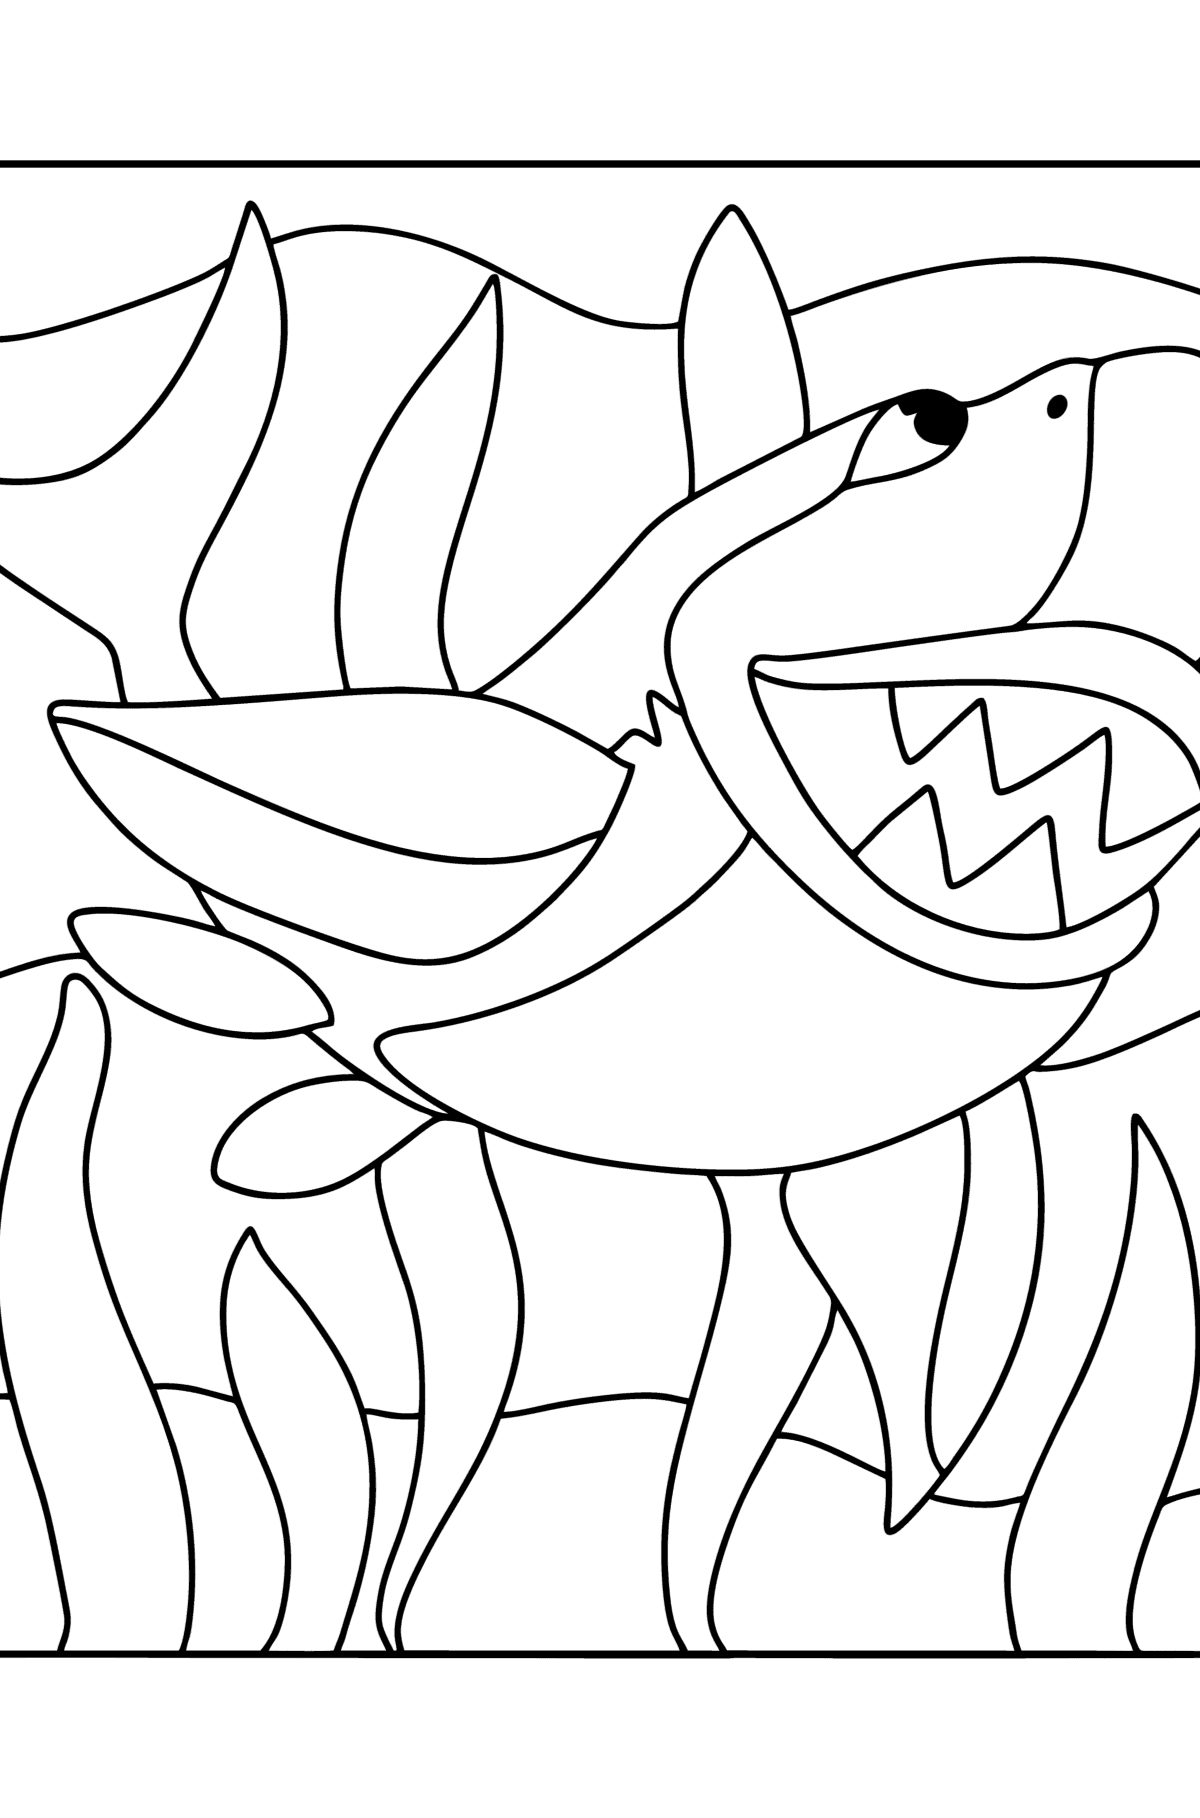 Desen de colorat rechin - Desene de colorat pentru copii